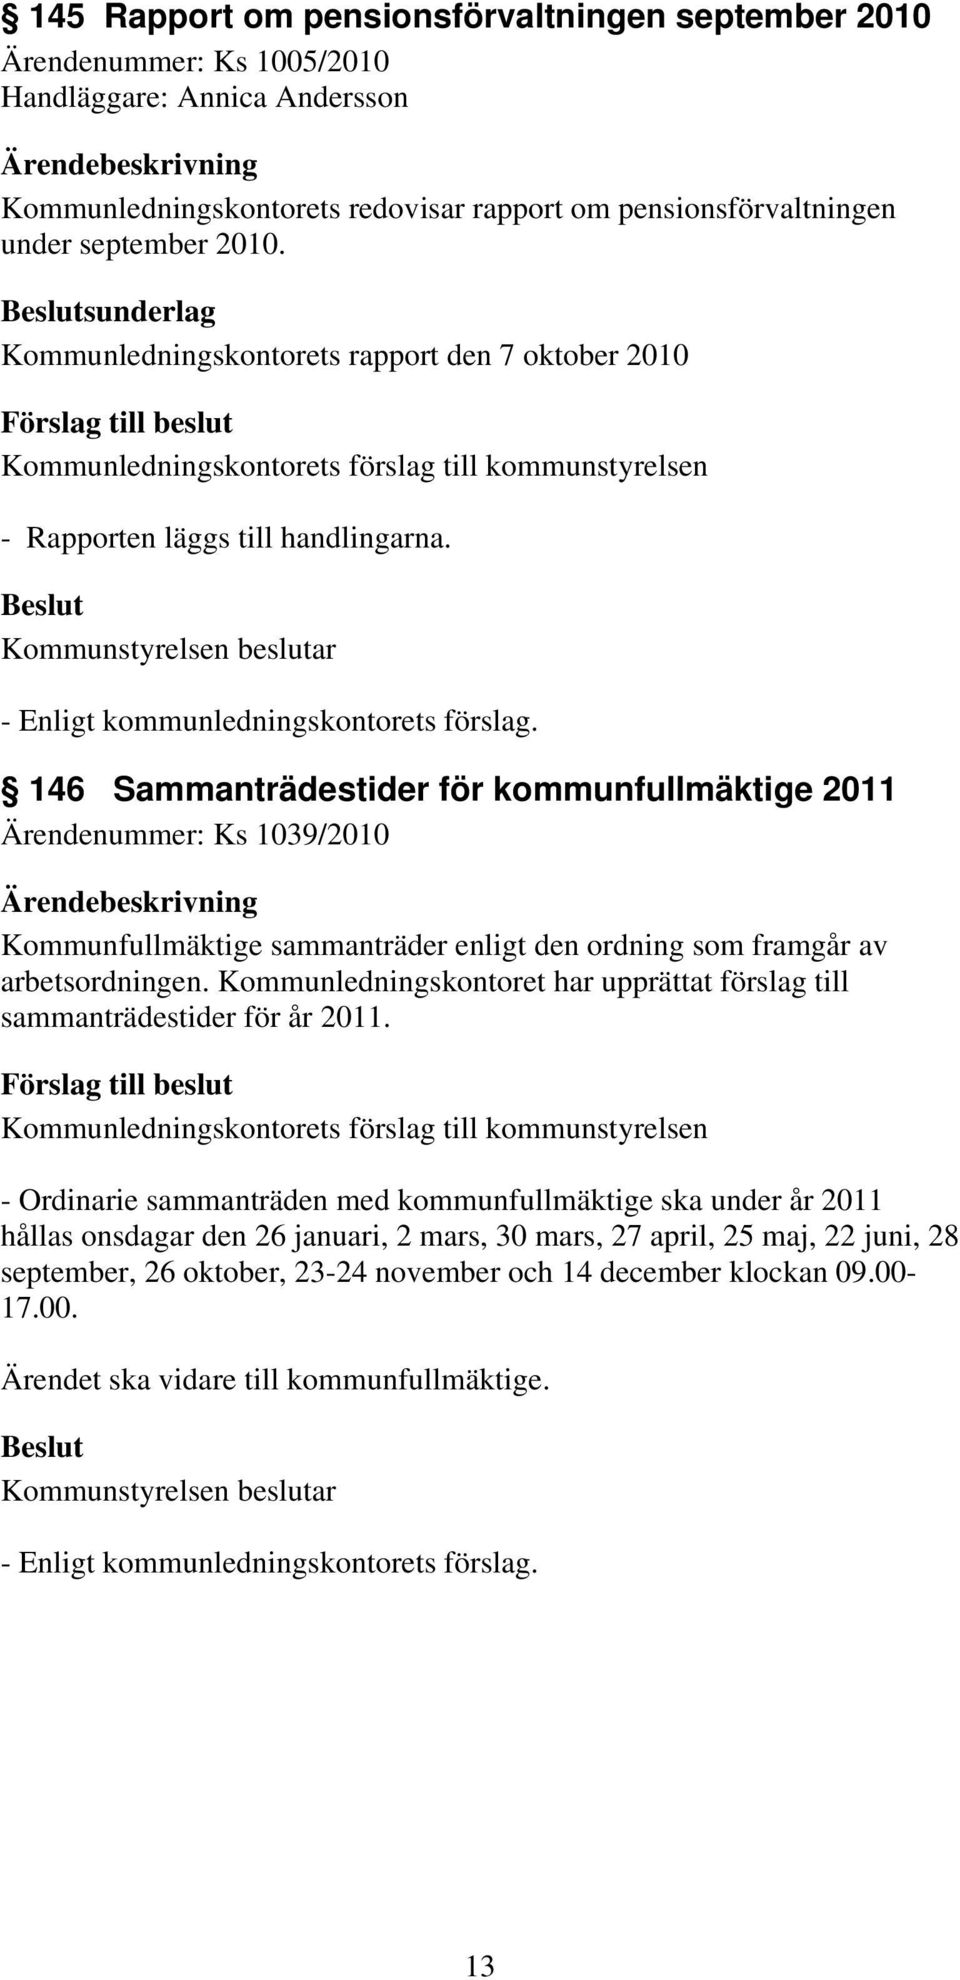 146 Sammanträdestider för kommunfullmäktige 2011 Ärendenummer: Ks 1039/2010 Kommunfullmäktige sammanträder enligt den ordning som framgår av arbetsordningen.